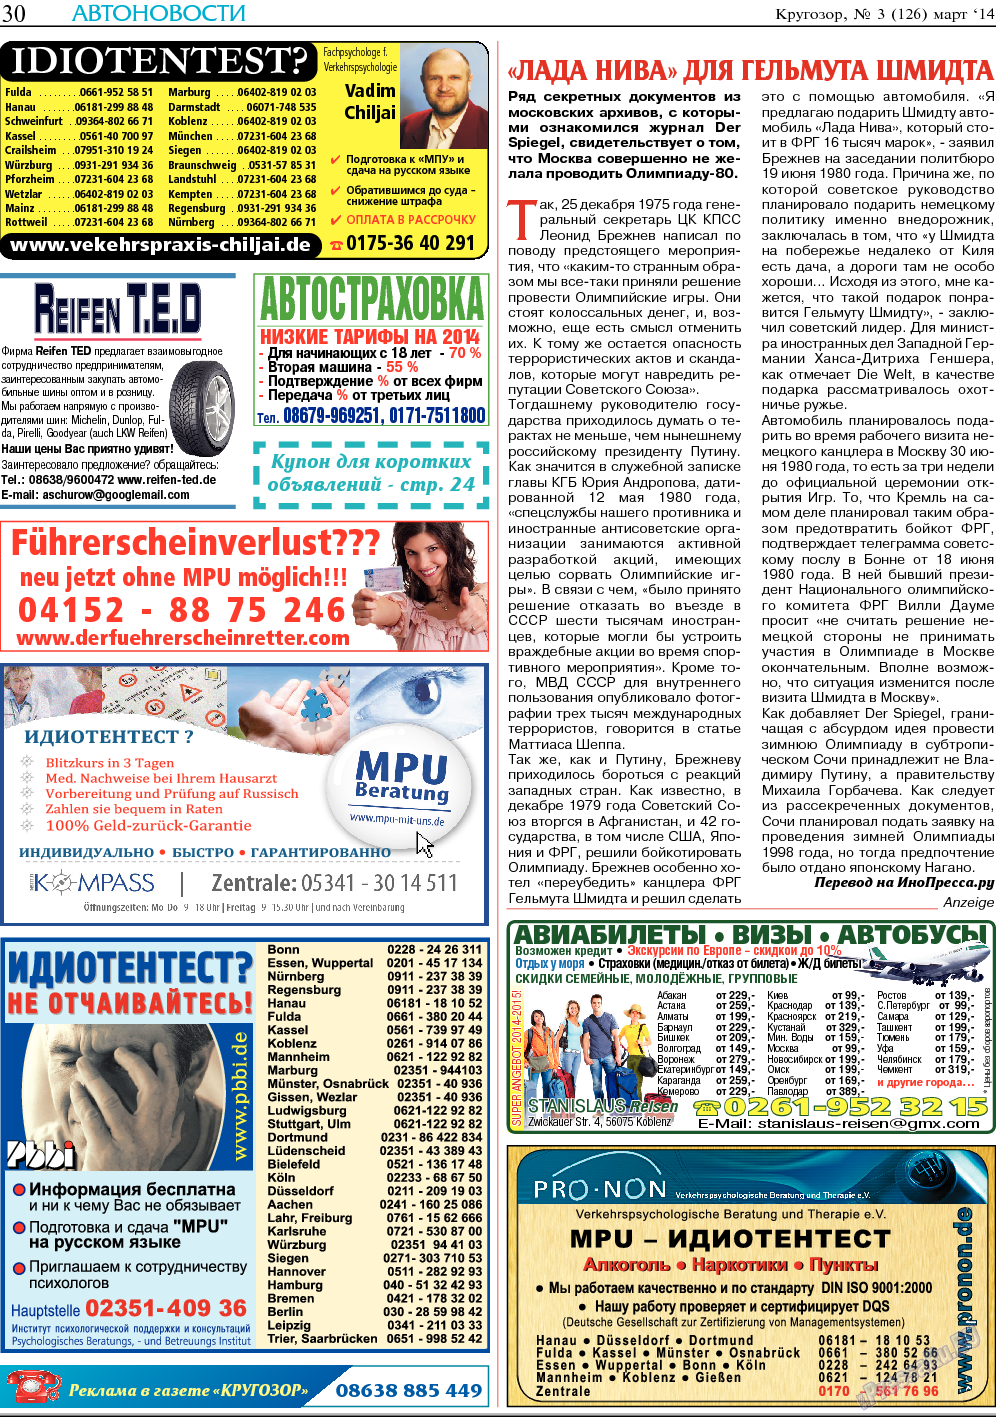 Кругозор, газета. 2014 №3 стр.30